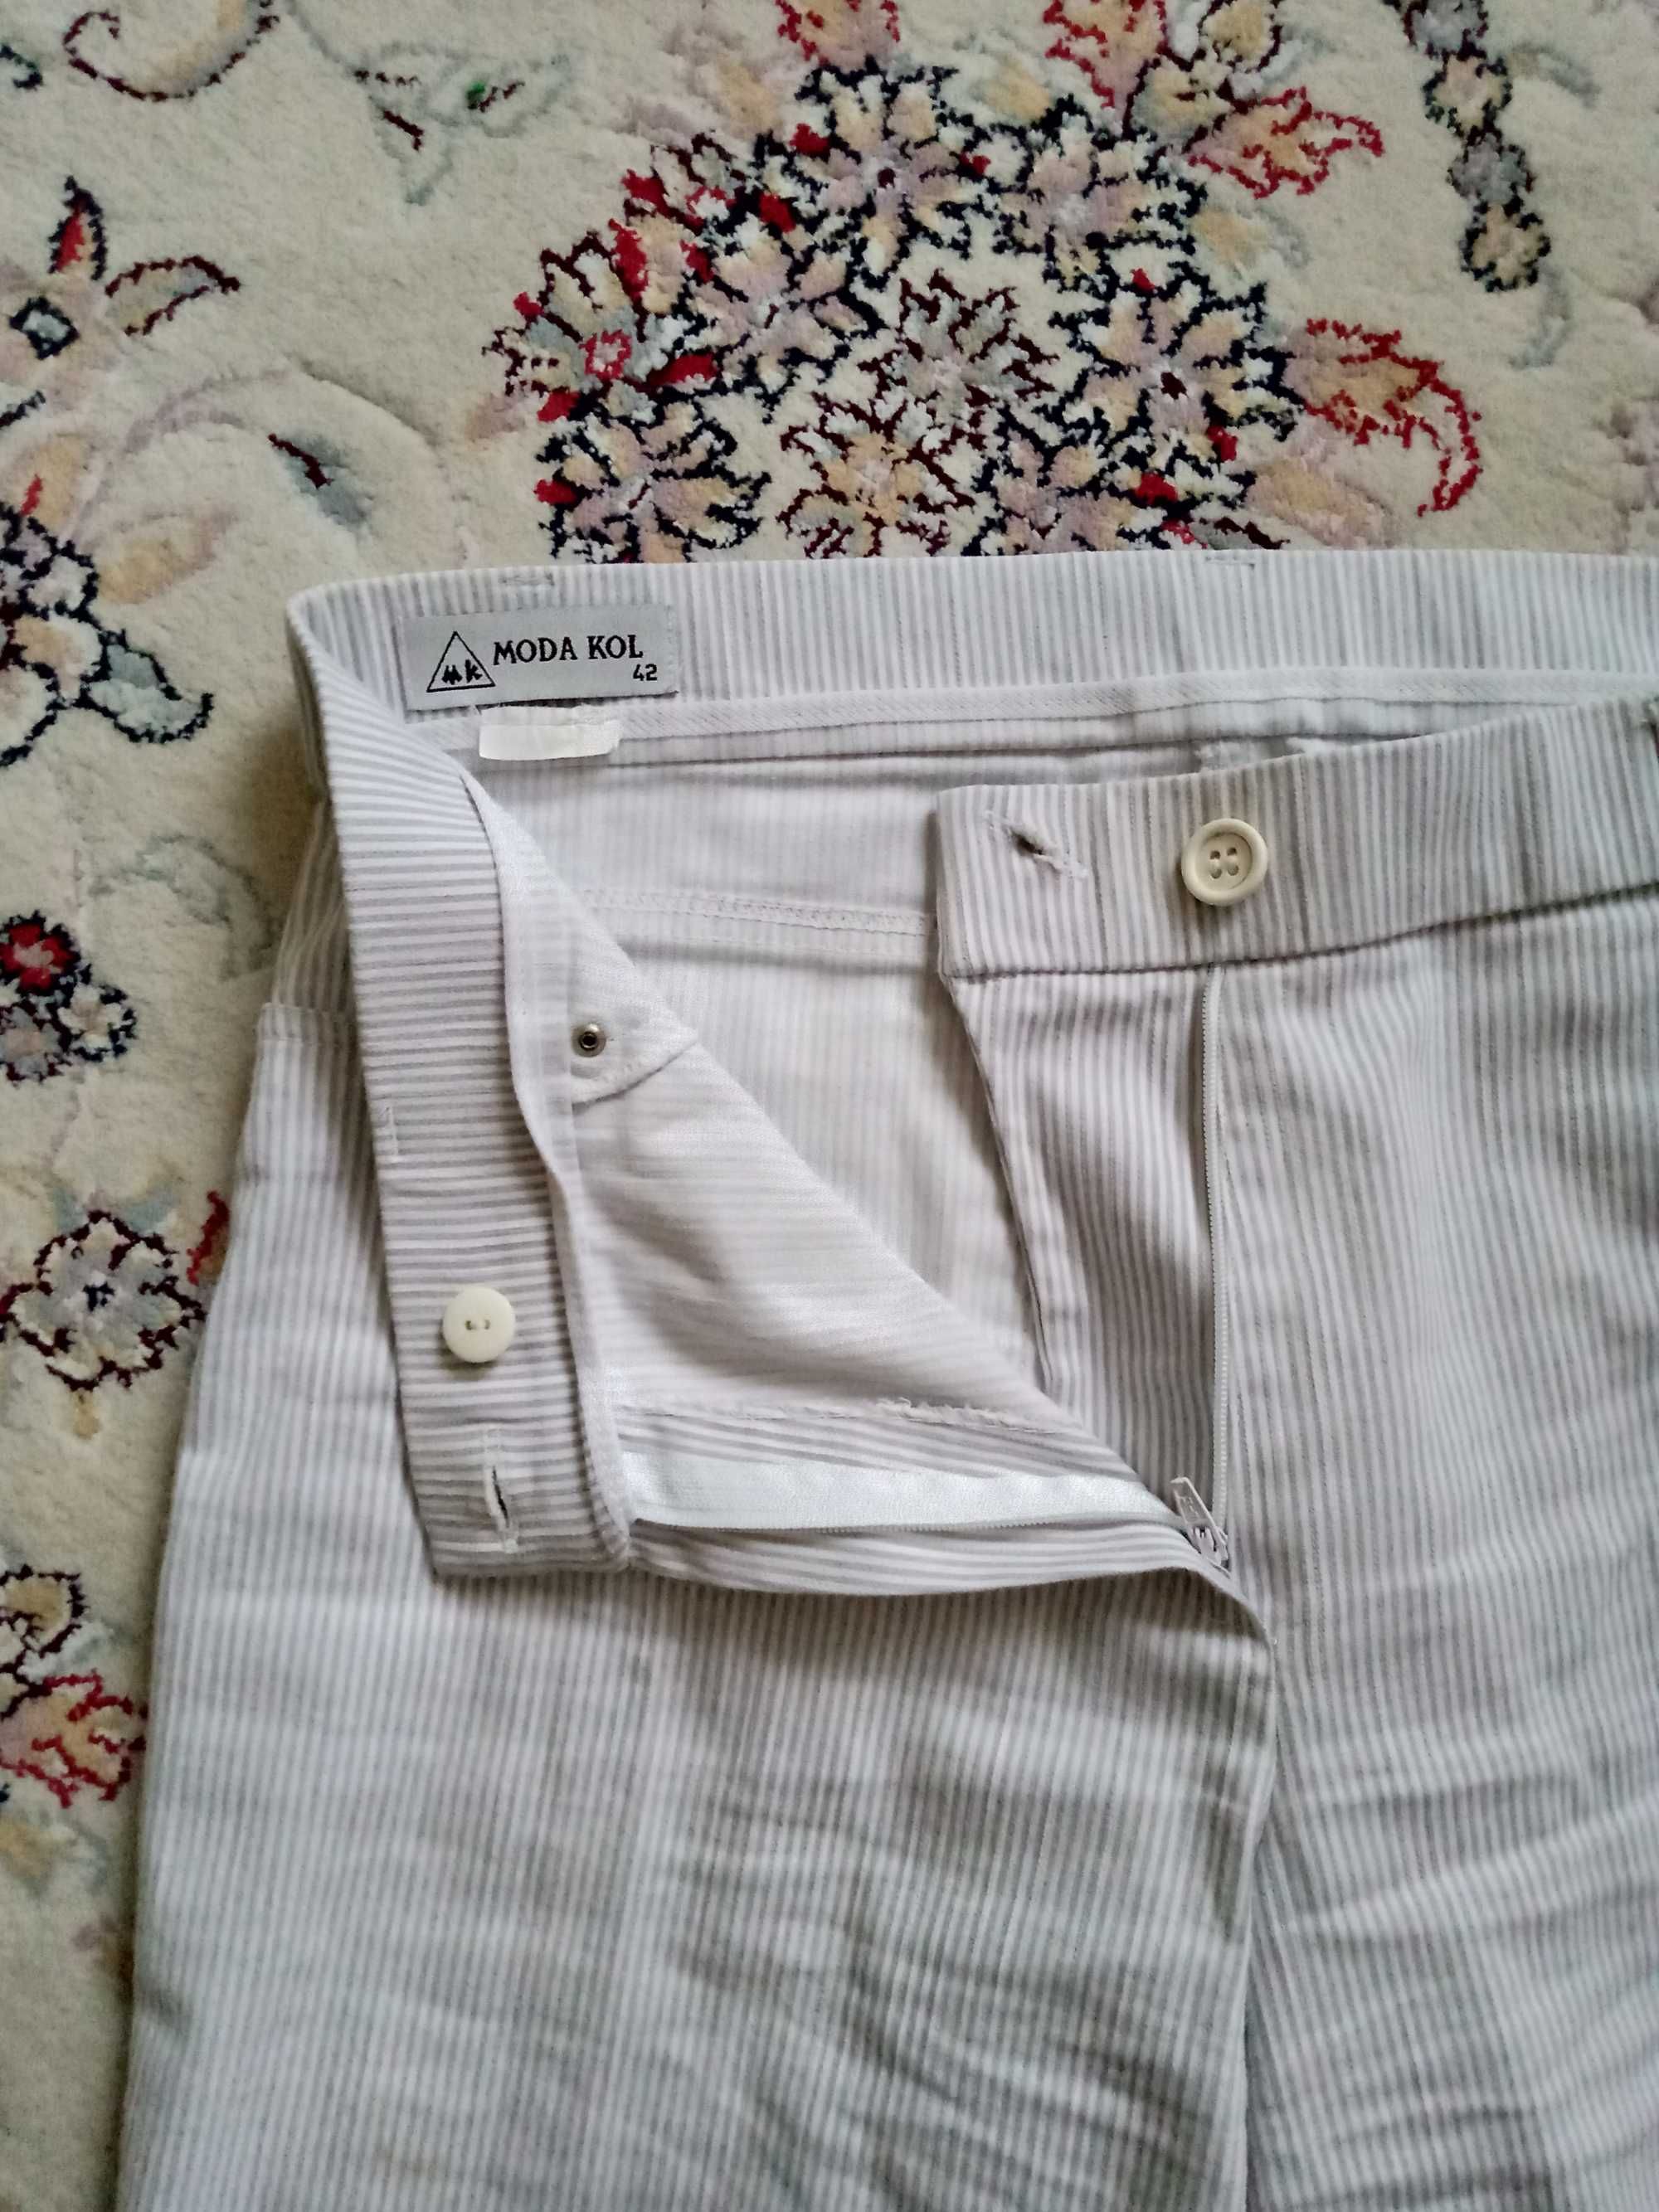 шорты женские производства мода кол, размер 42.